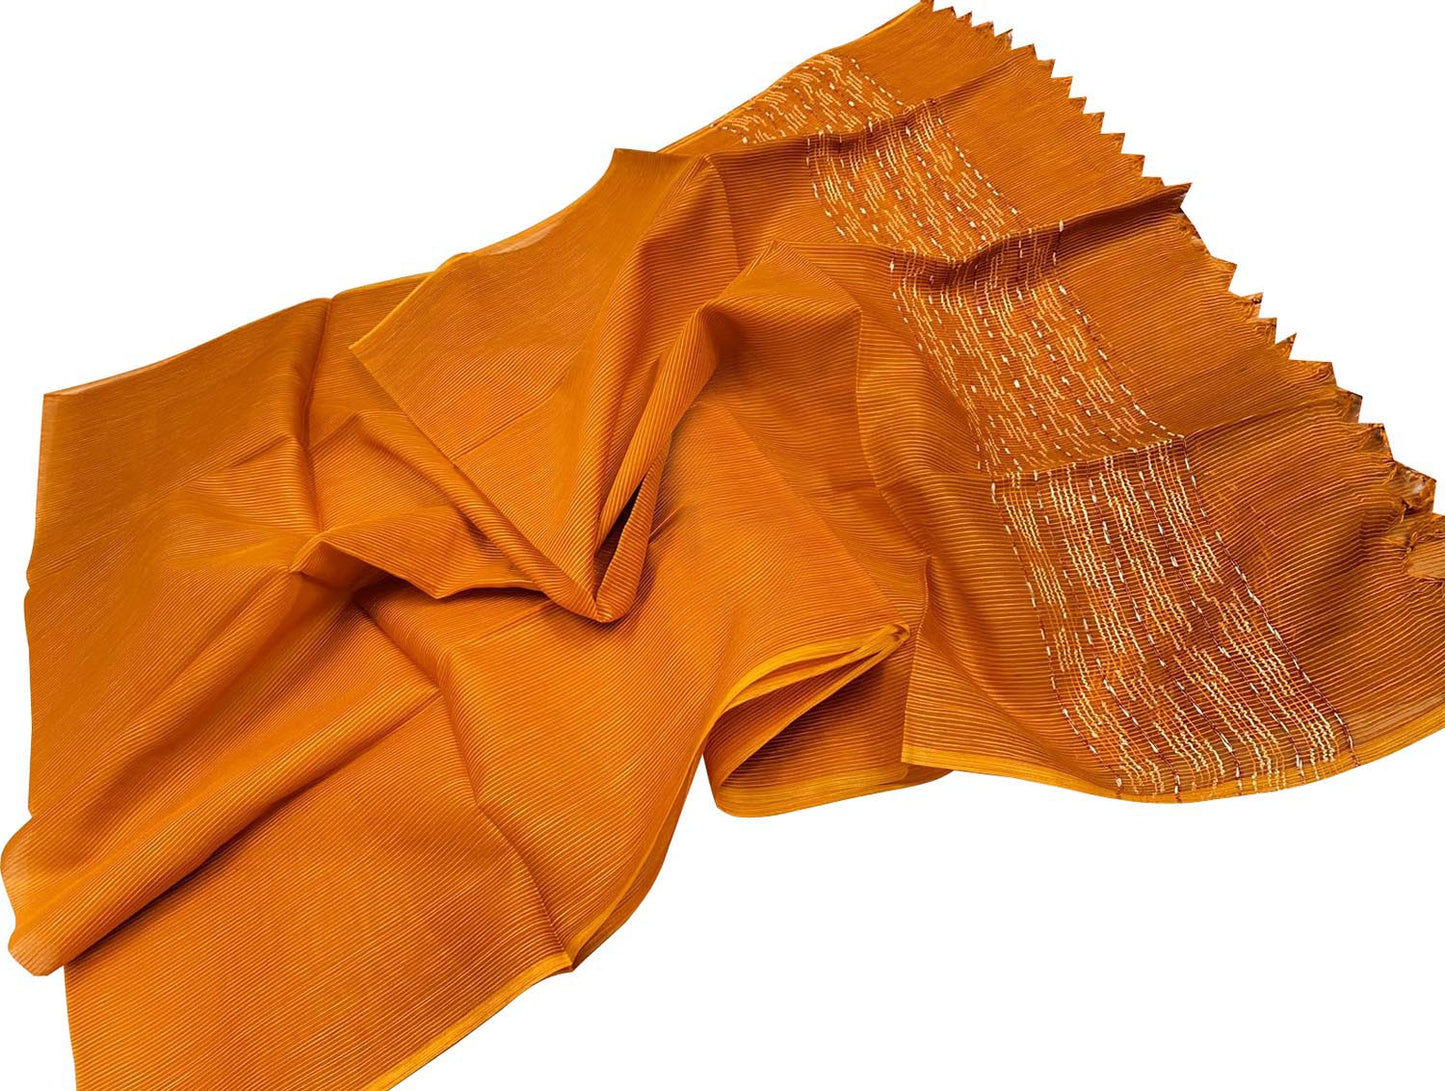 Get Elegant & Stylish Pure Tussar Silk Dupatta from Shop Orange Bhagalpur - Luxurion World